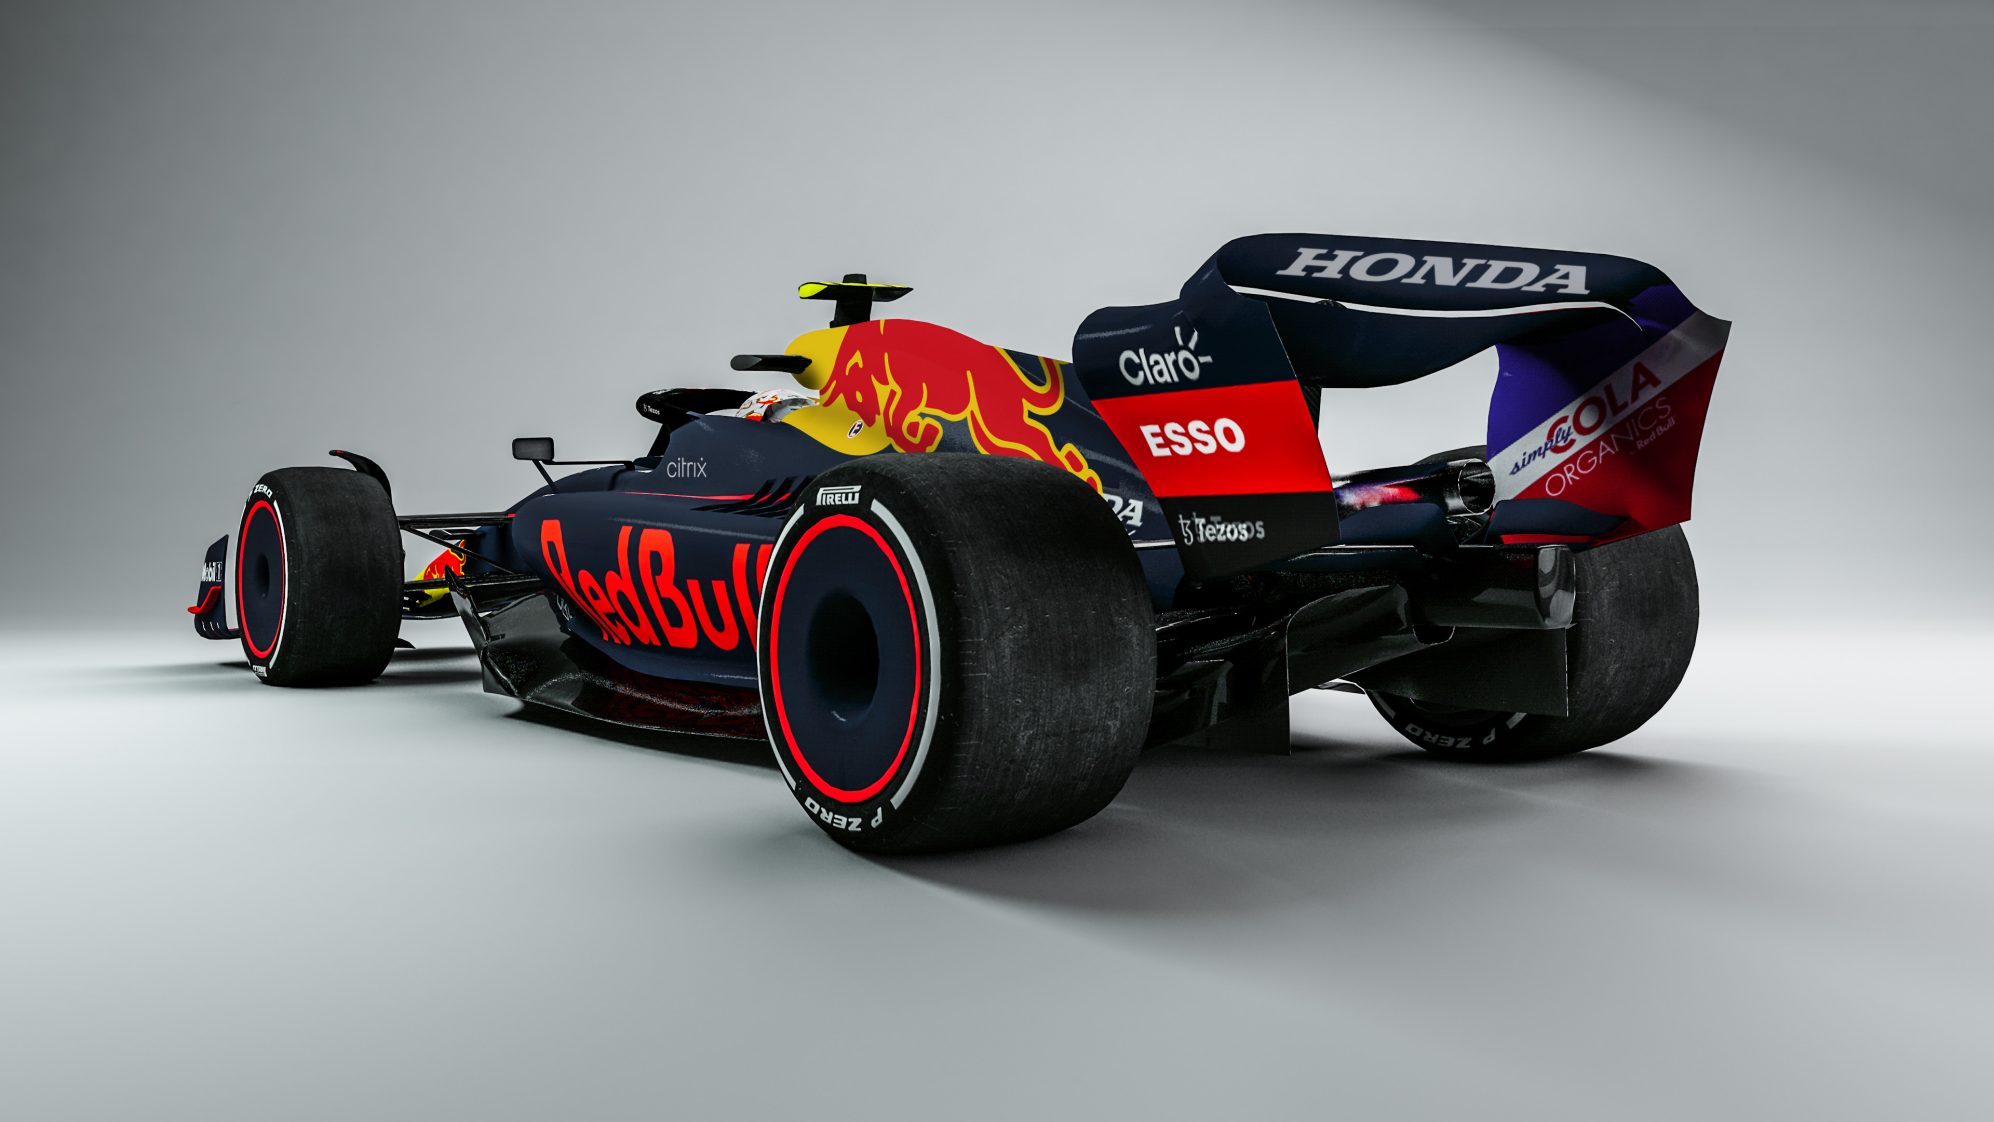 Download Max Verstappen Racing in His Signature Red Bull Car Wallpaper |  Wallpapers.com